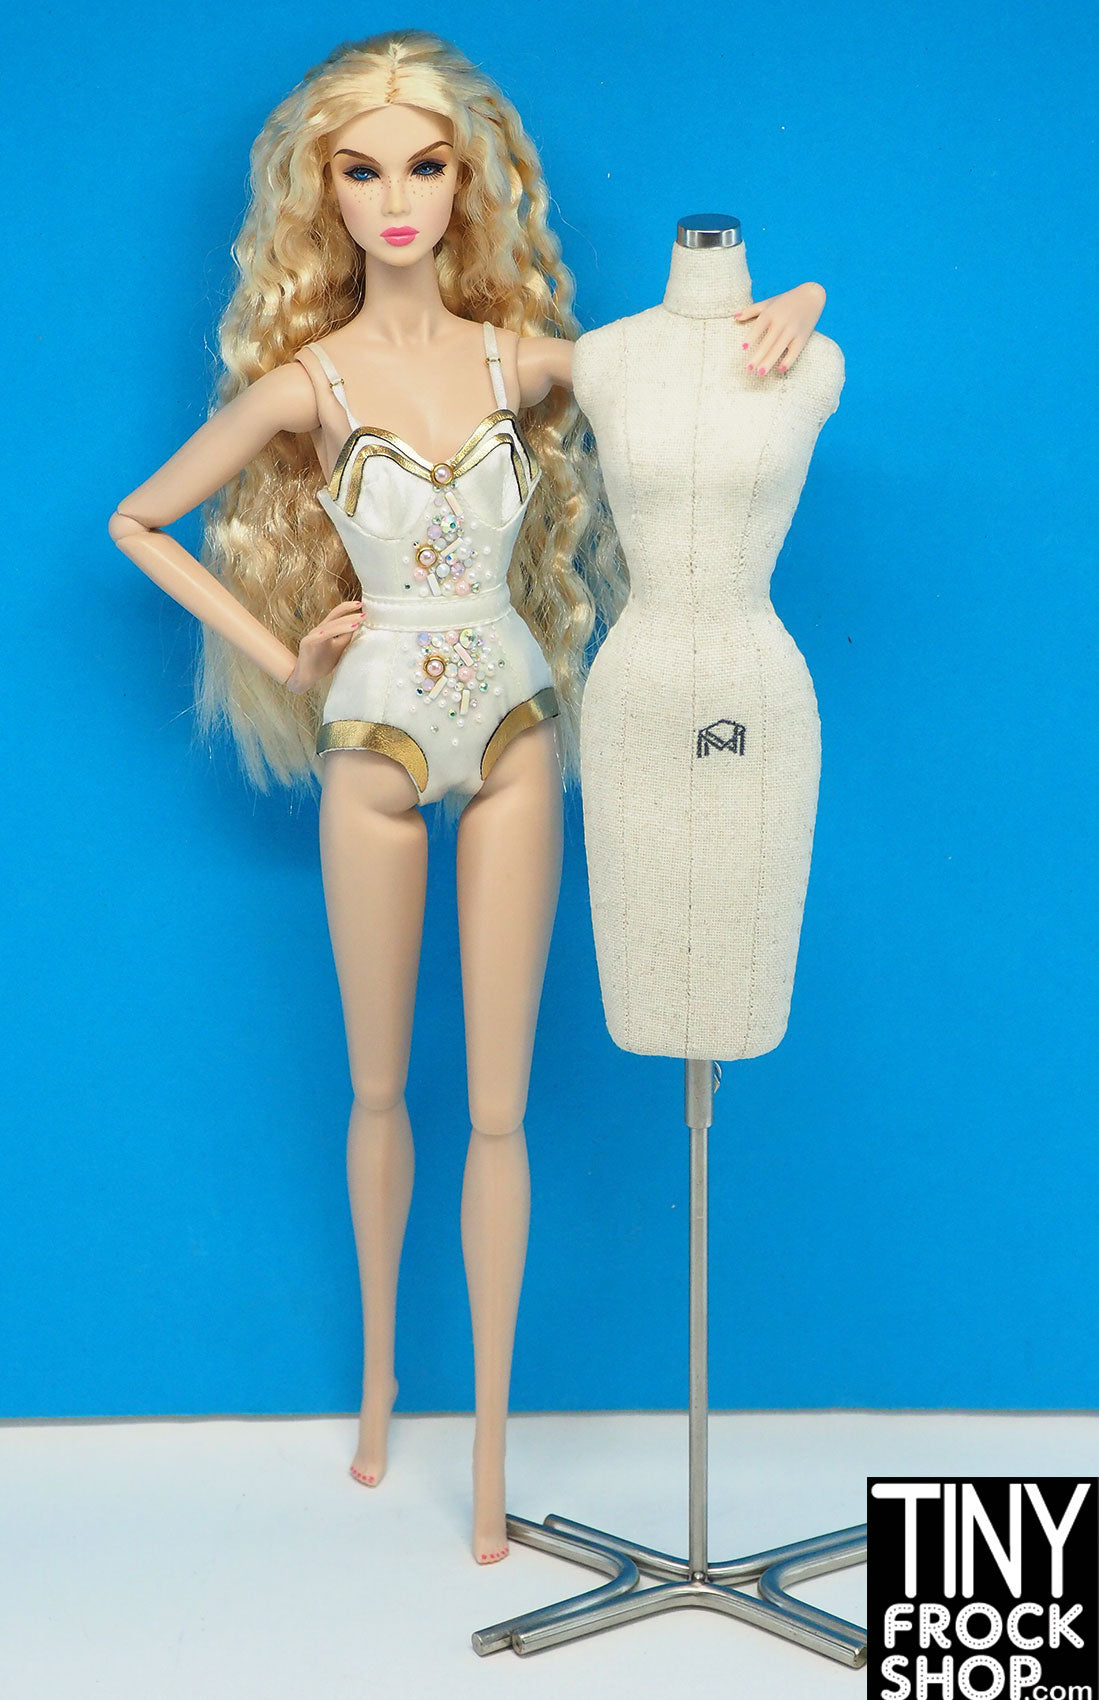 DIY: DRESSFORM  Doll dress form, Fashion dolls photography, Mini dress form